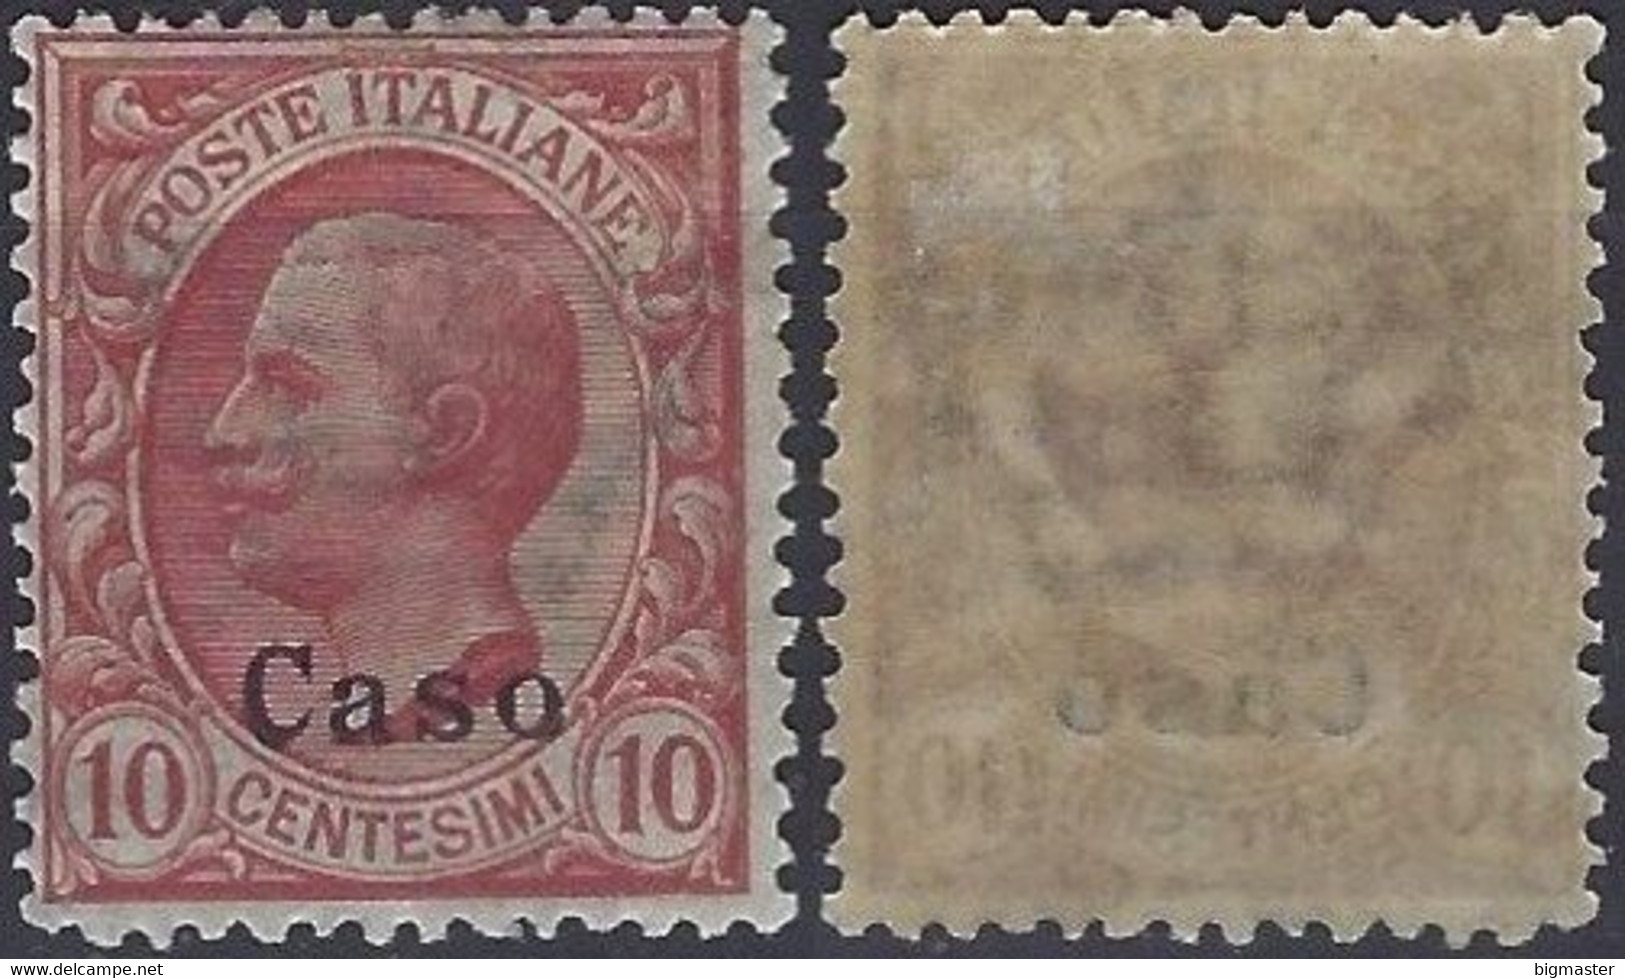 1912 Regno D'Italia IG 1912 IT-EG CS3 10c  Italy Stamps Overprinted 'Caso' - Aegean (Caso)